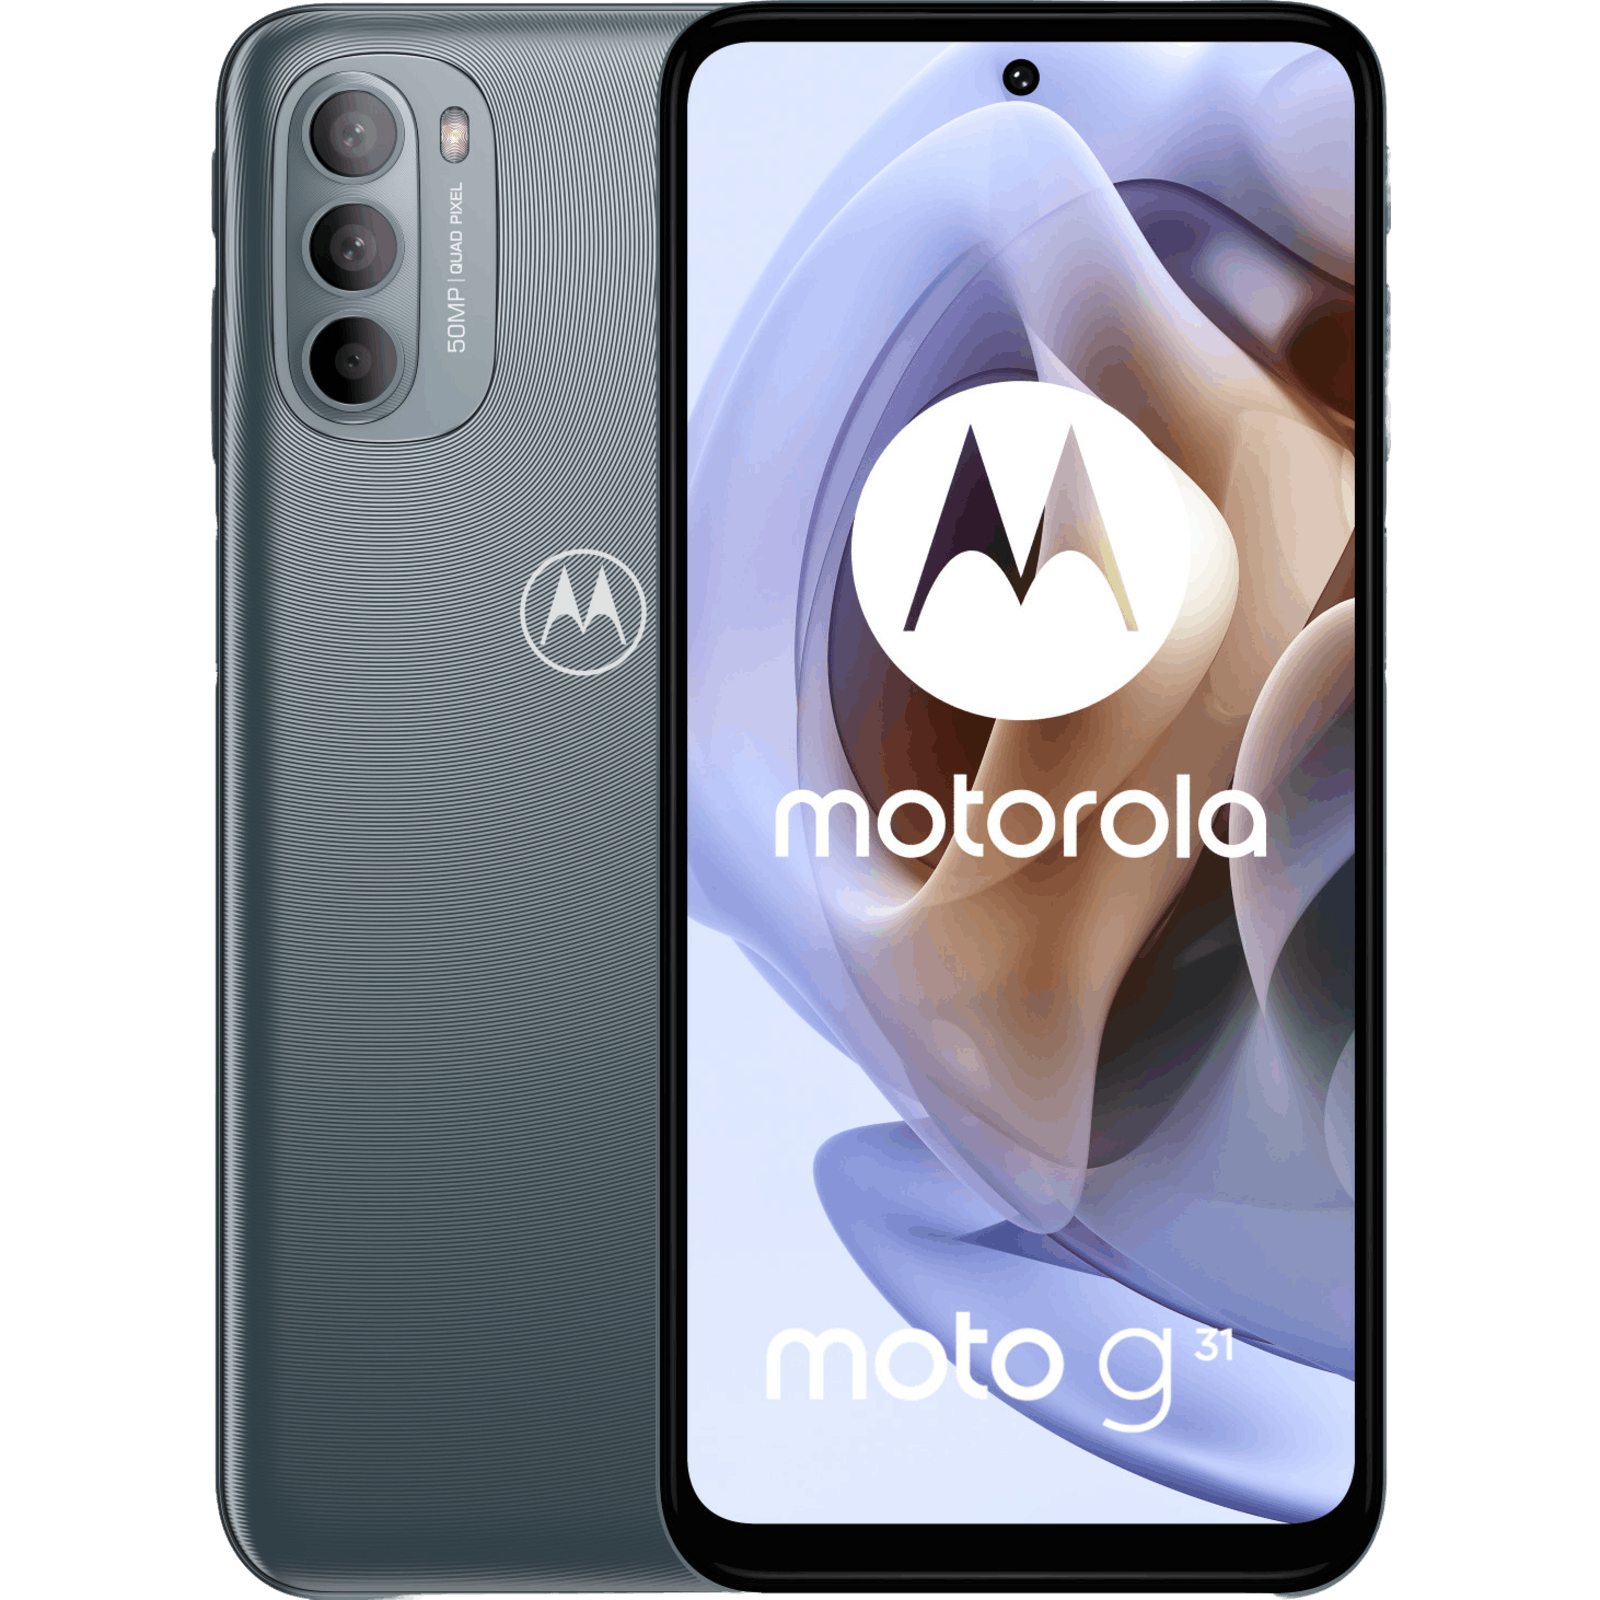 archief klimaat Miniatuur Motorola telefoon kopen? - Mobiel.nl